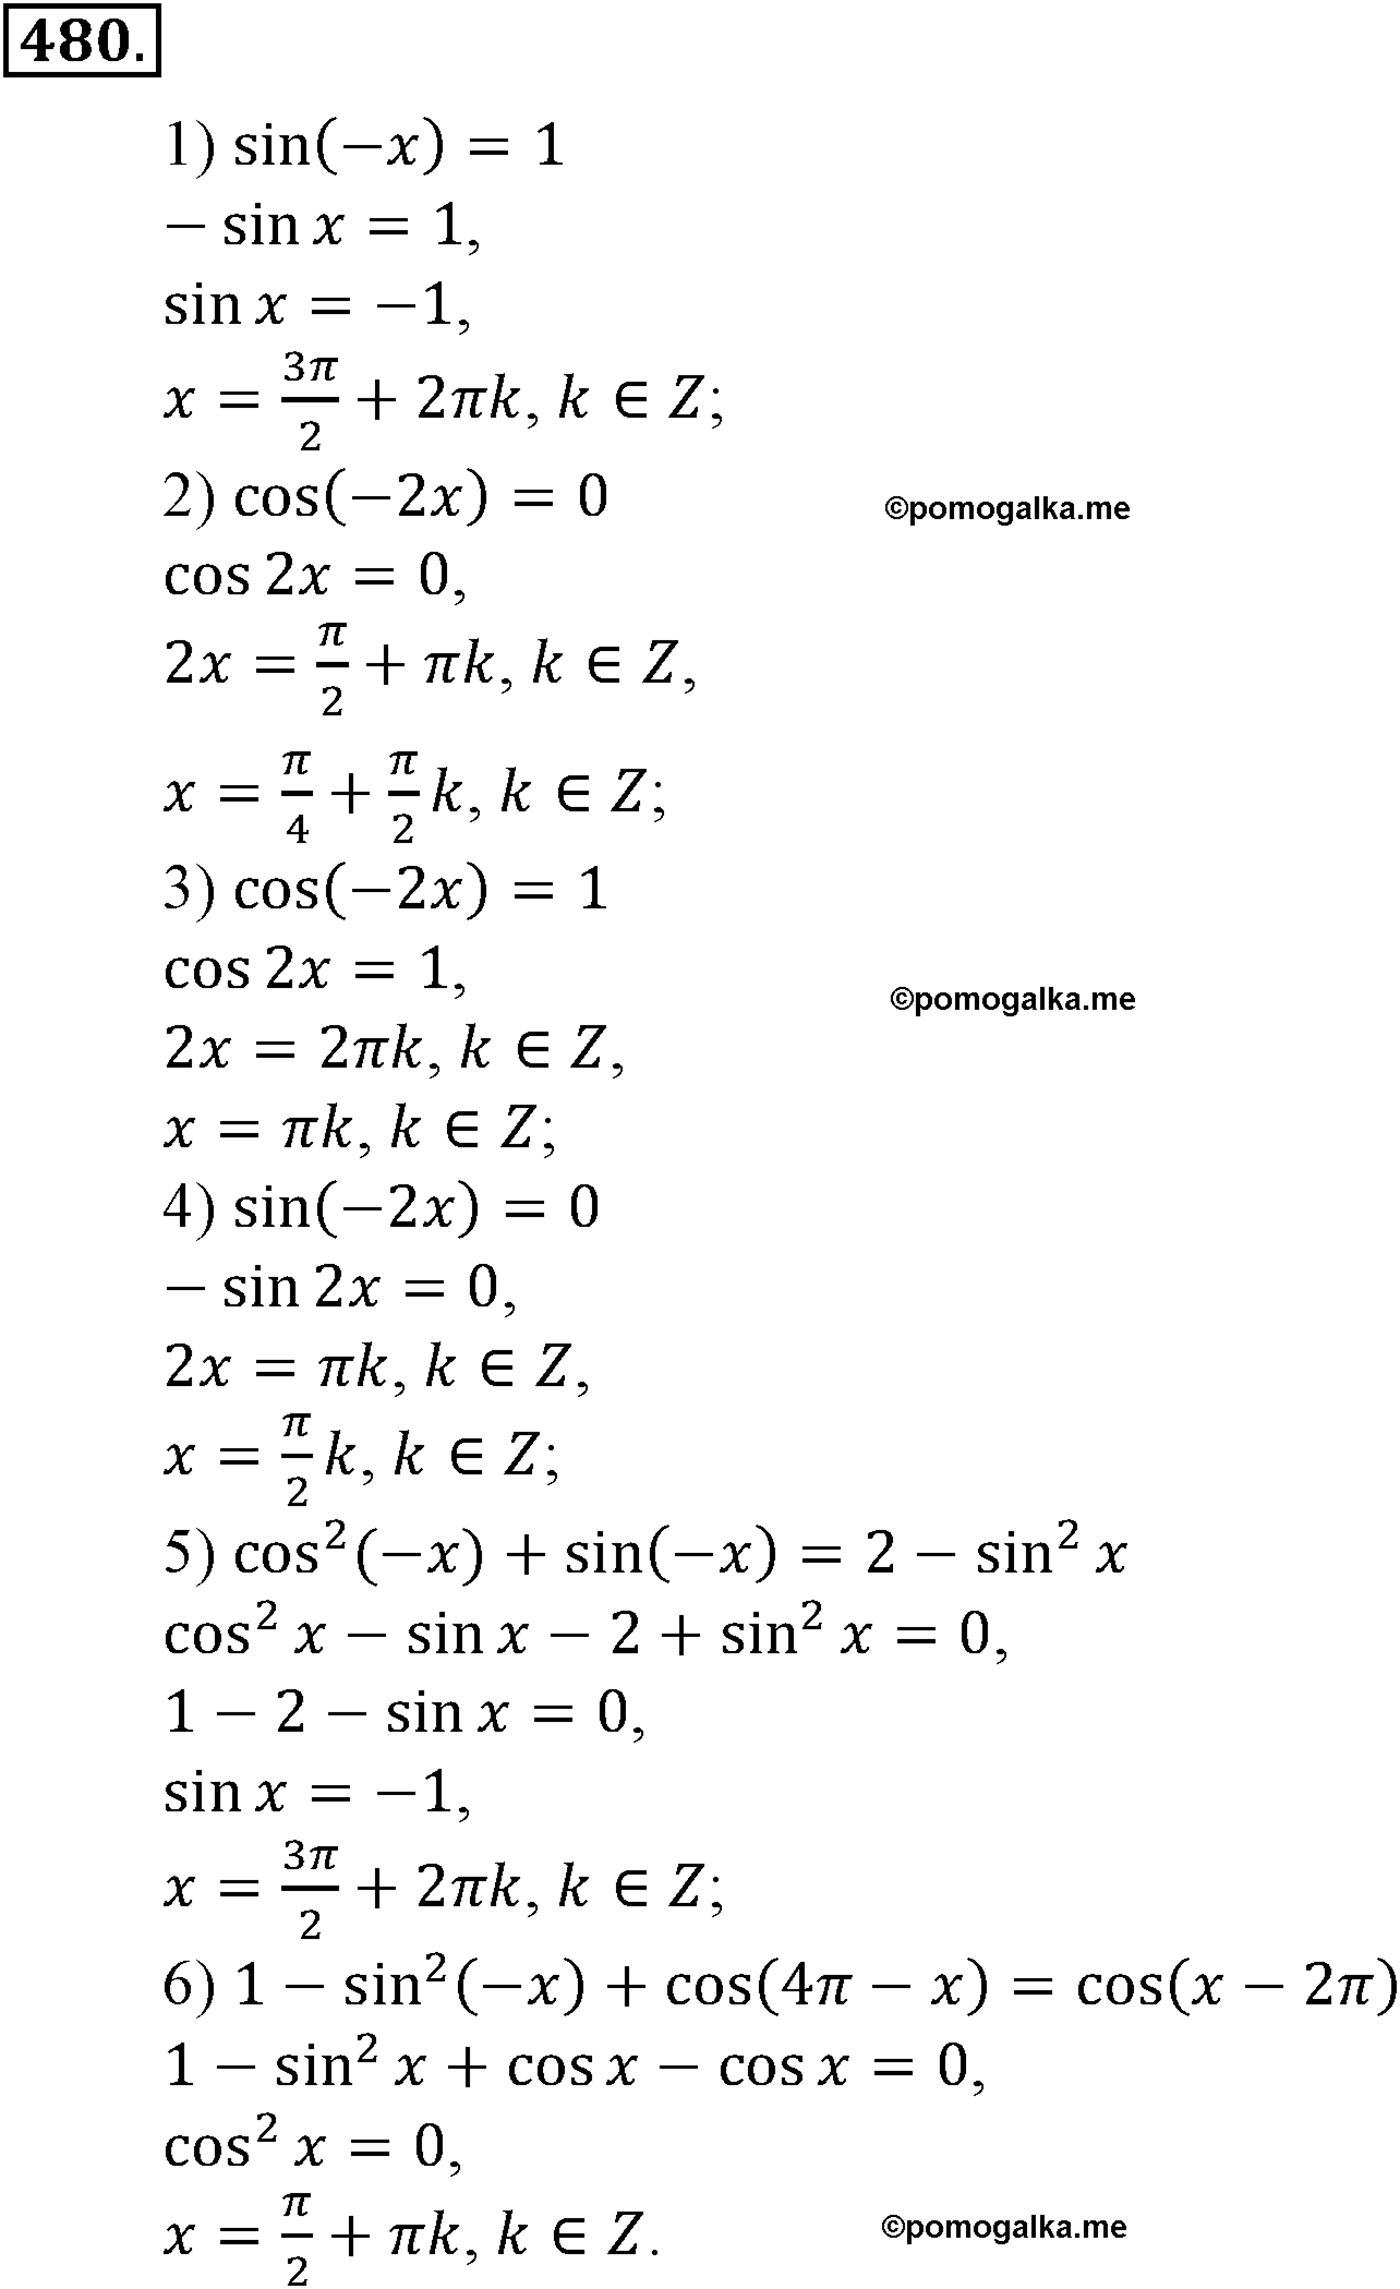 разбор задачи №480 по алгебре за 10-11 класс из учебника Алимова, Колягина